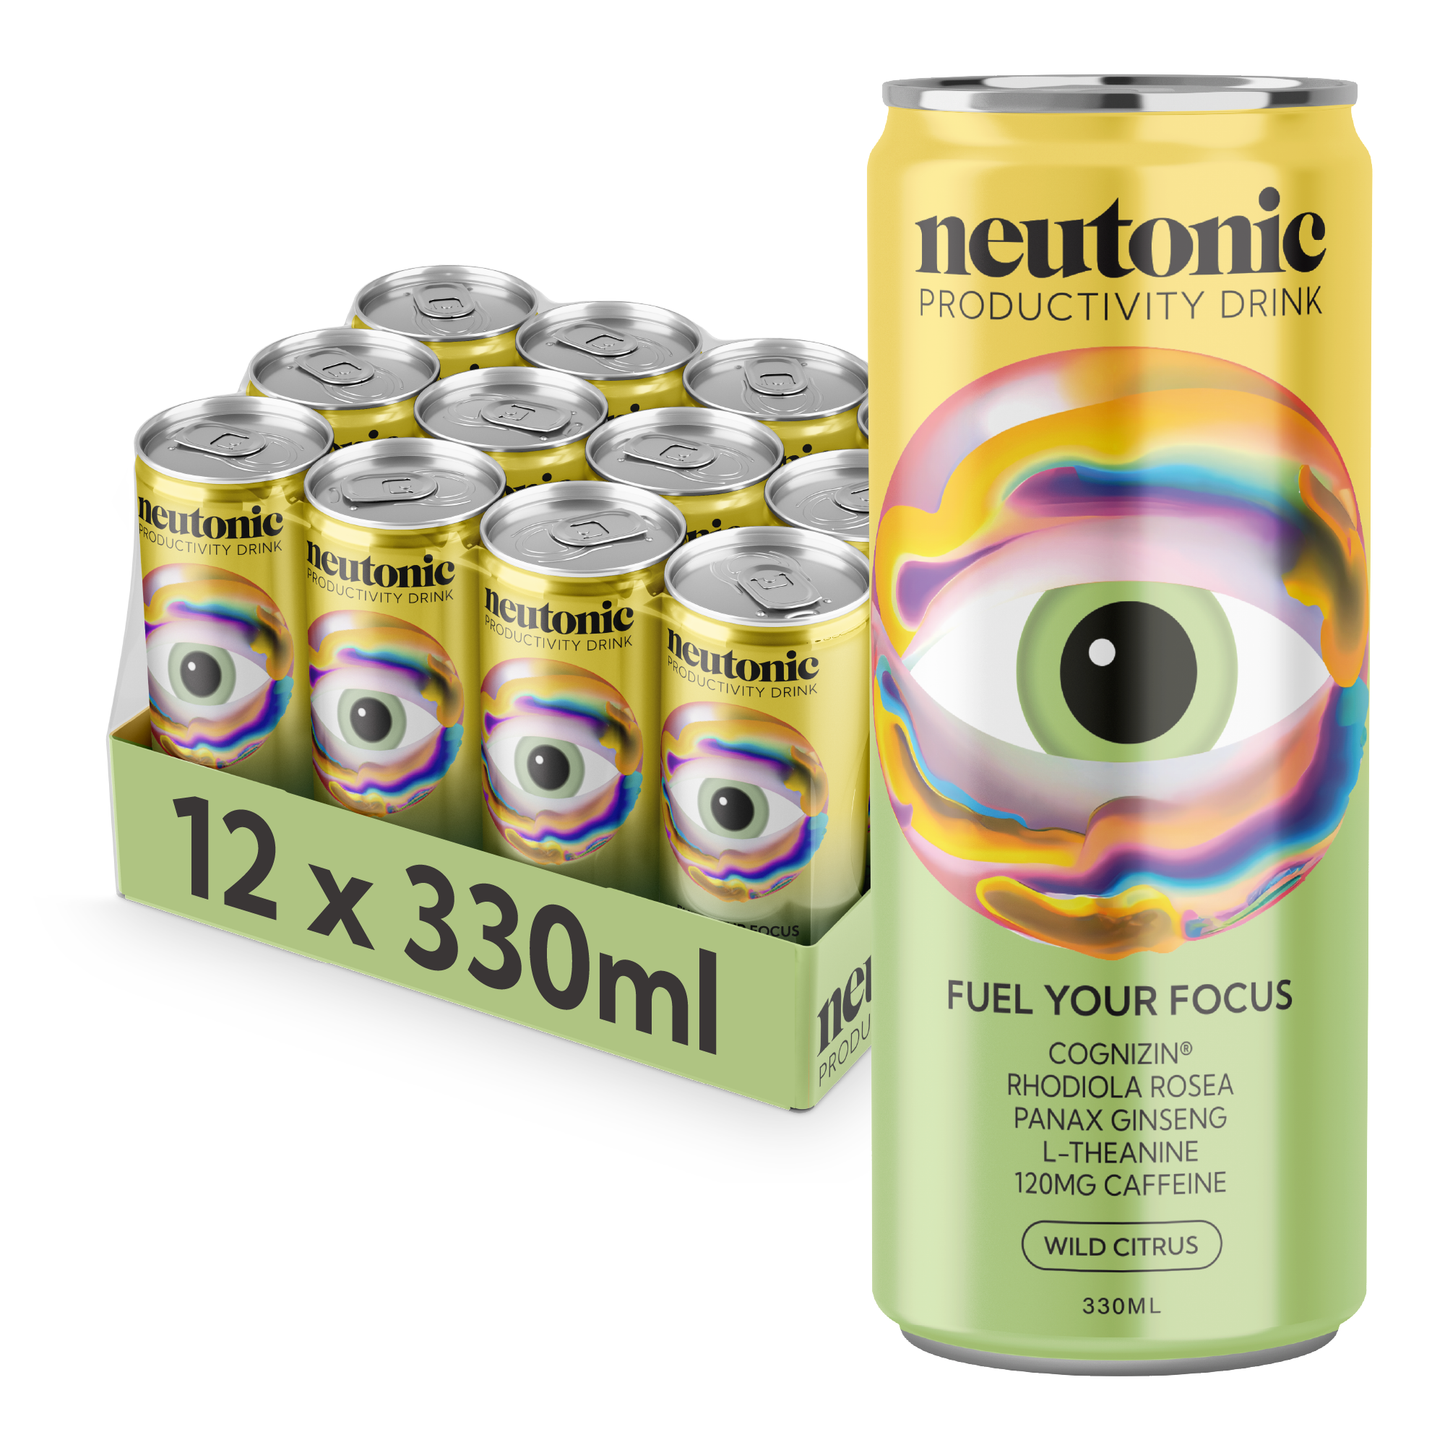 Neutonic product image wild citrus